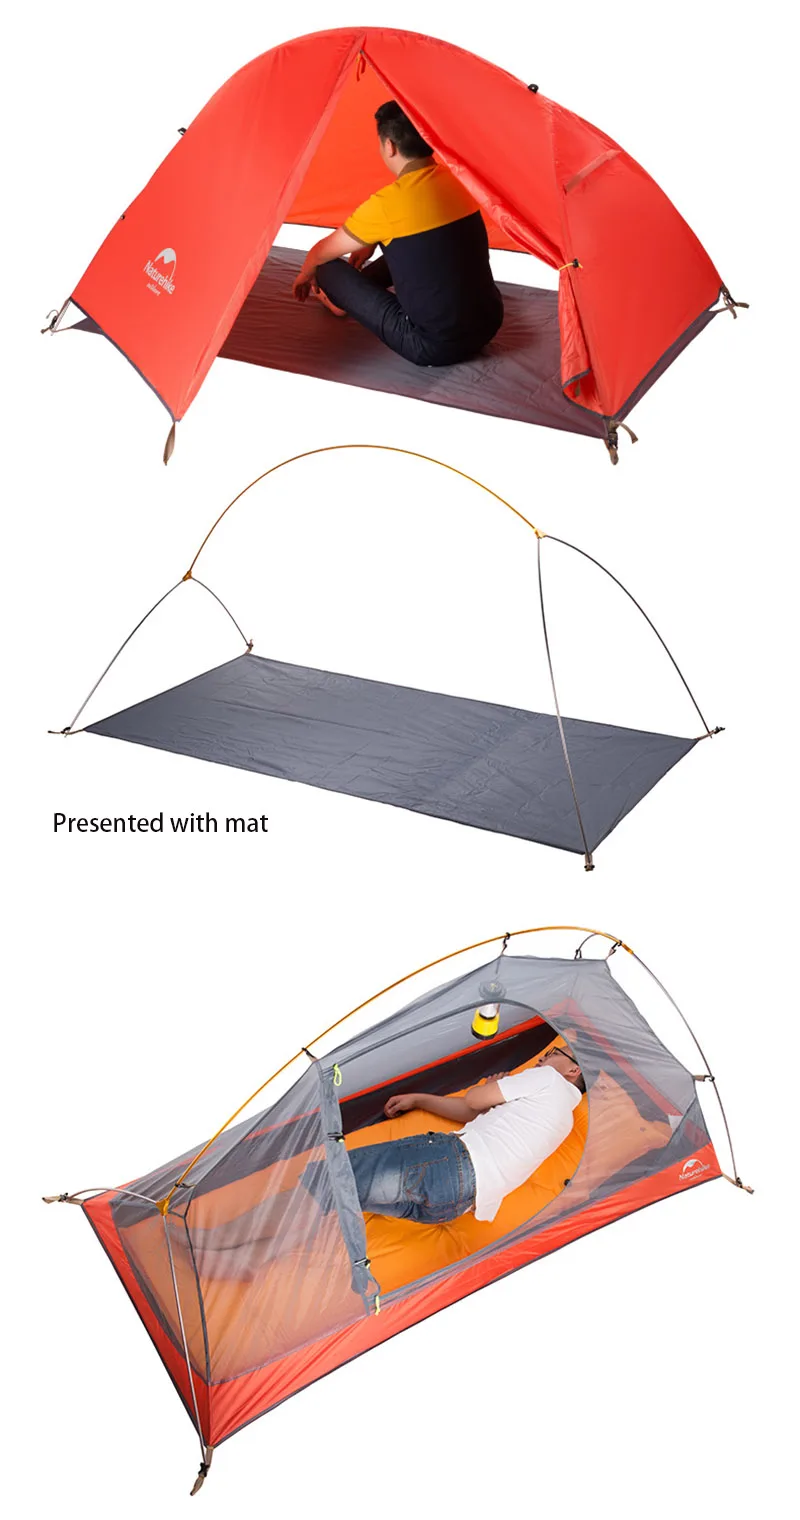 NatureHike 1 человек Сверхлегкий Палатка Открытый 3 сезона Водонепроницаемый палатка с юбкой NH18A095-D